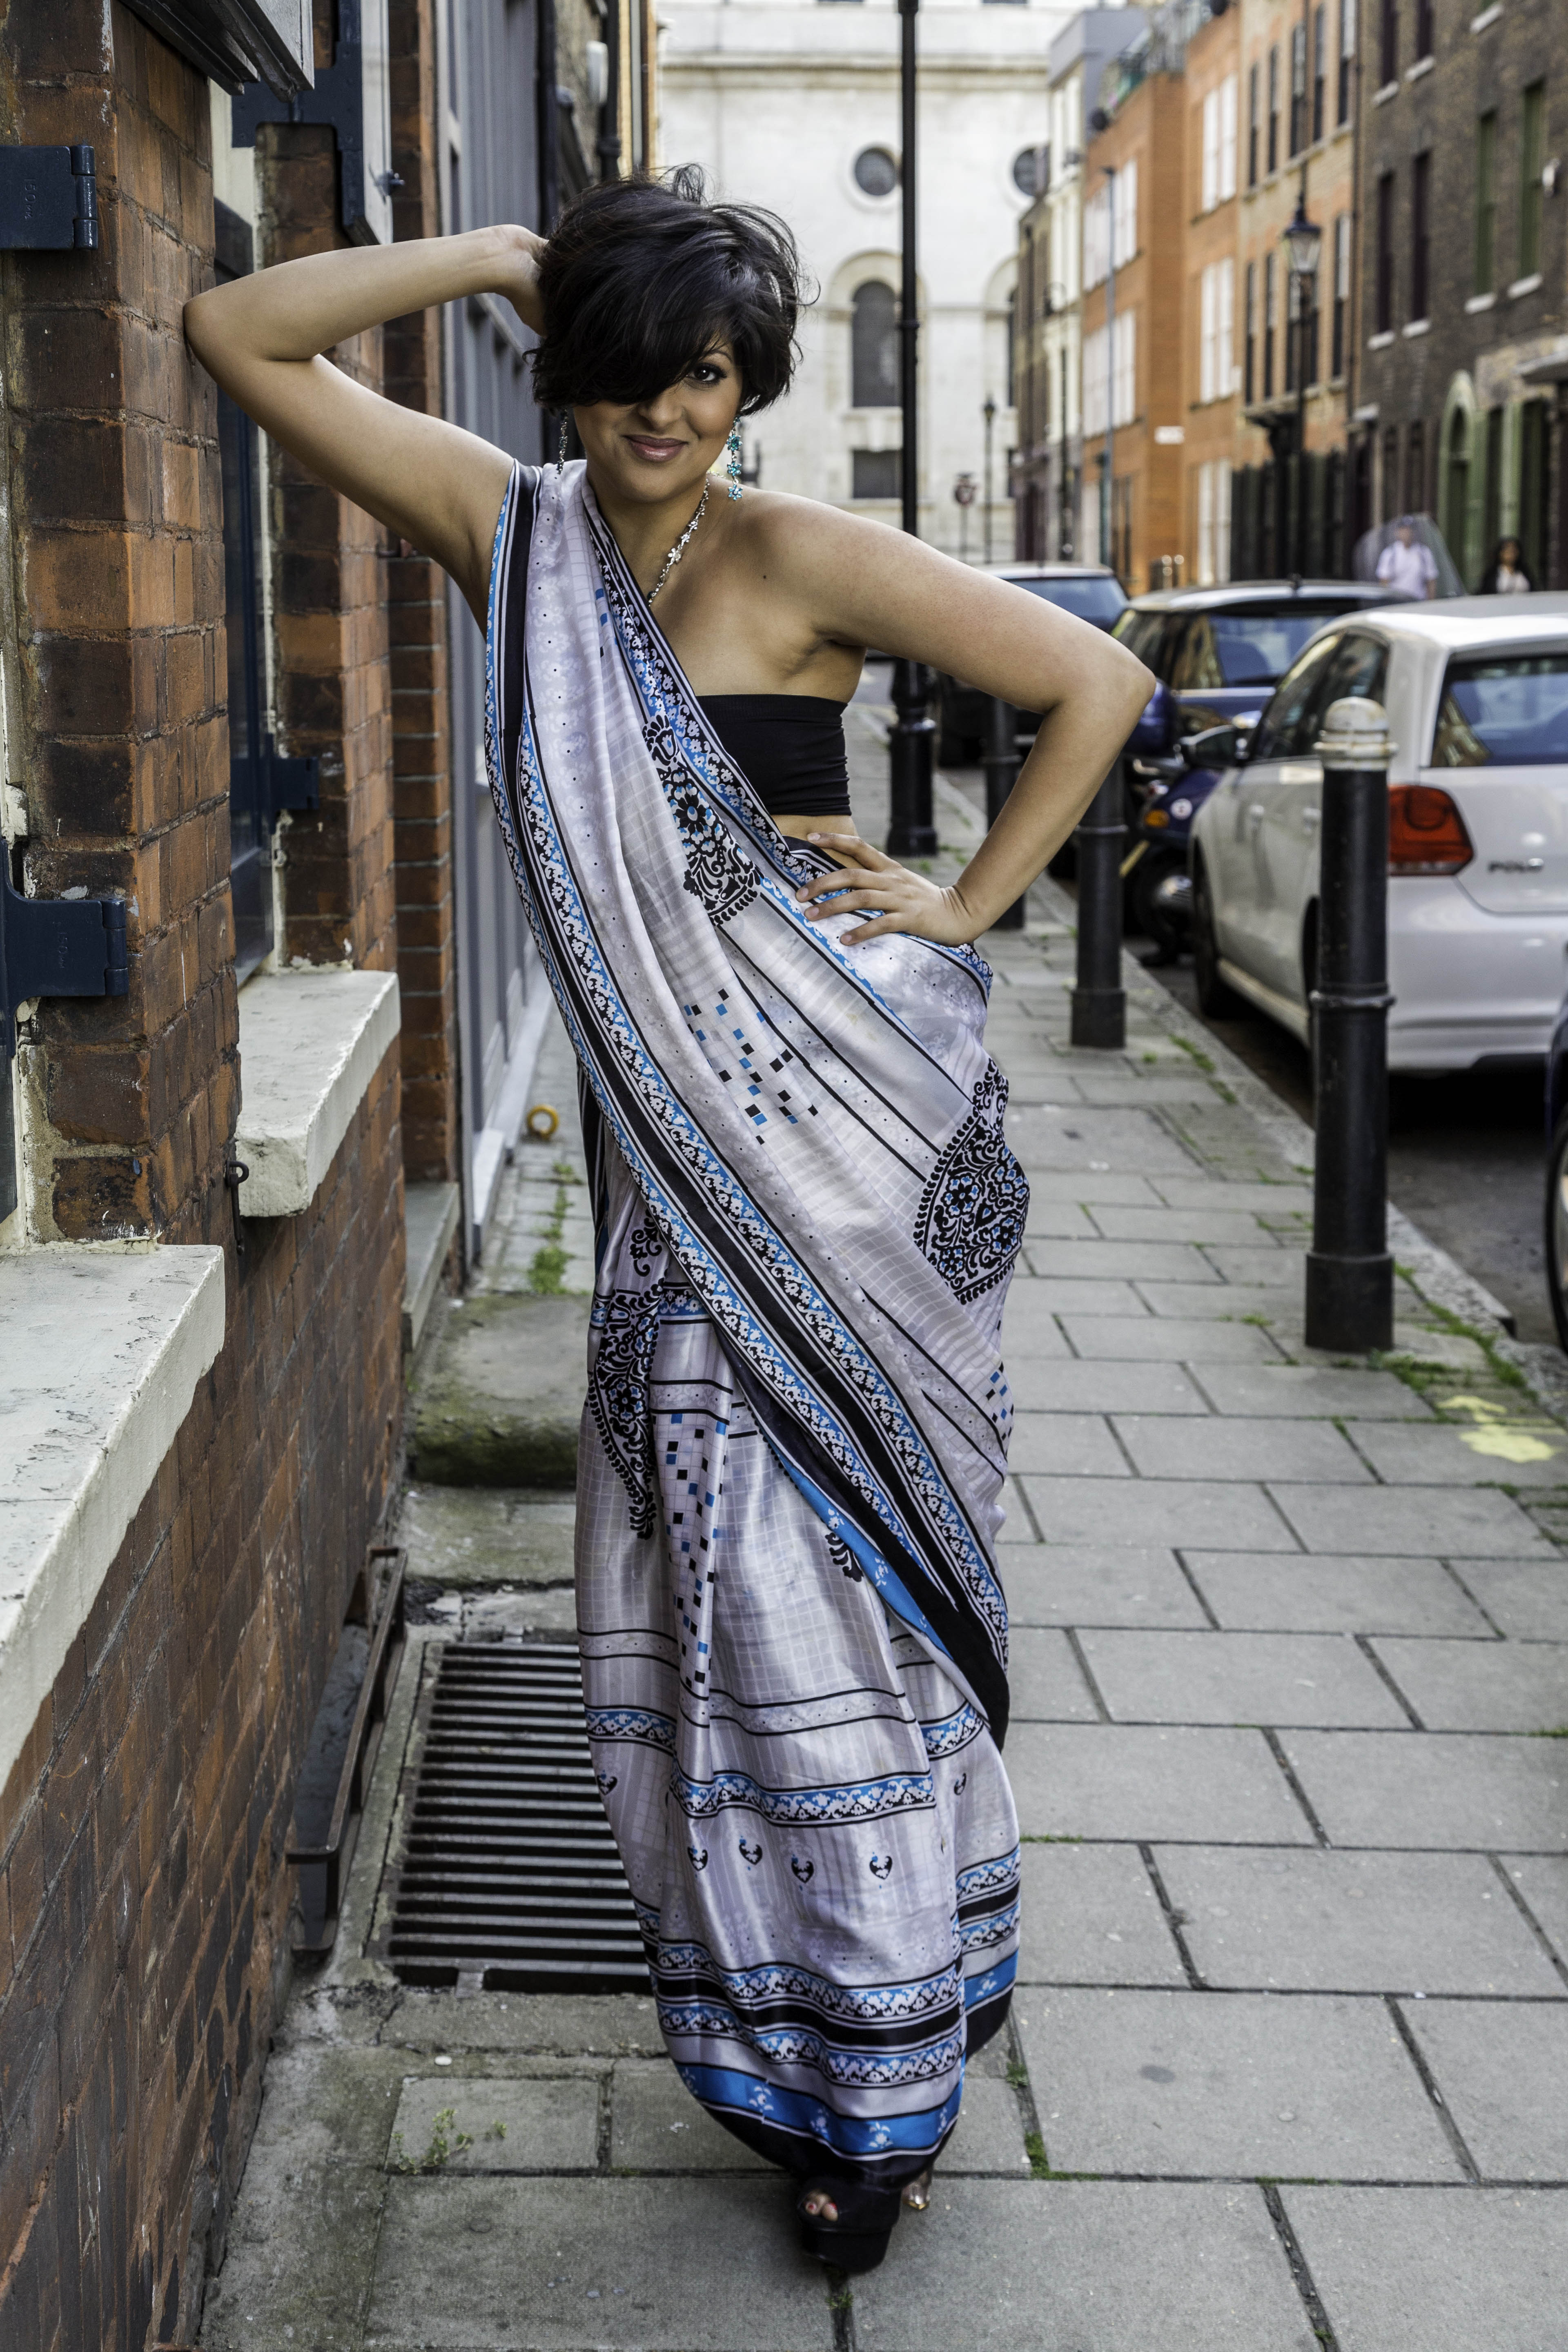 Indian shoot on Brick Lane, London